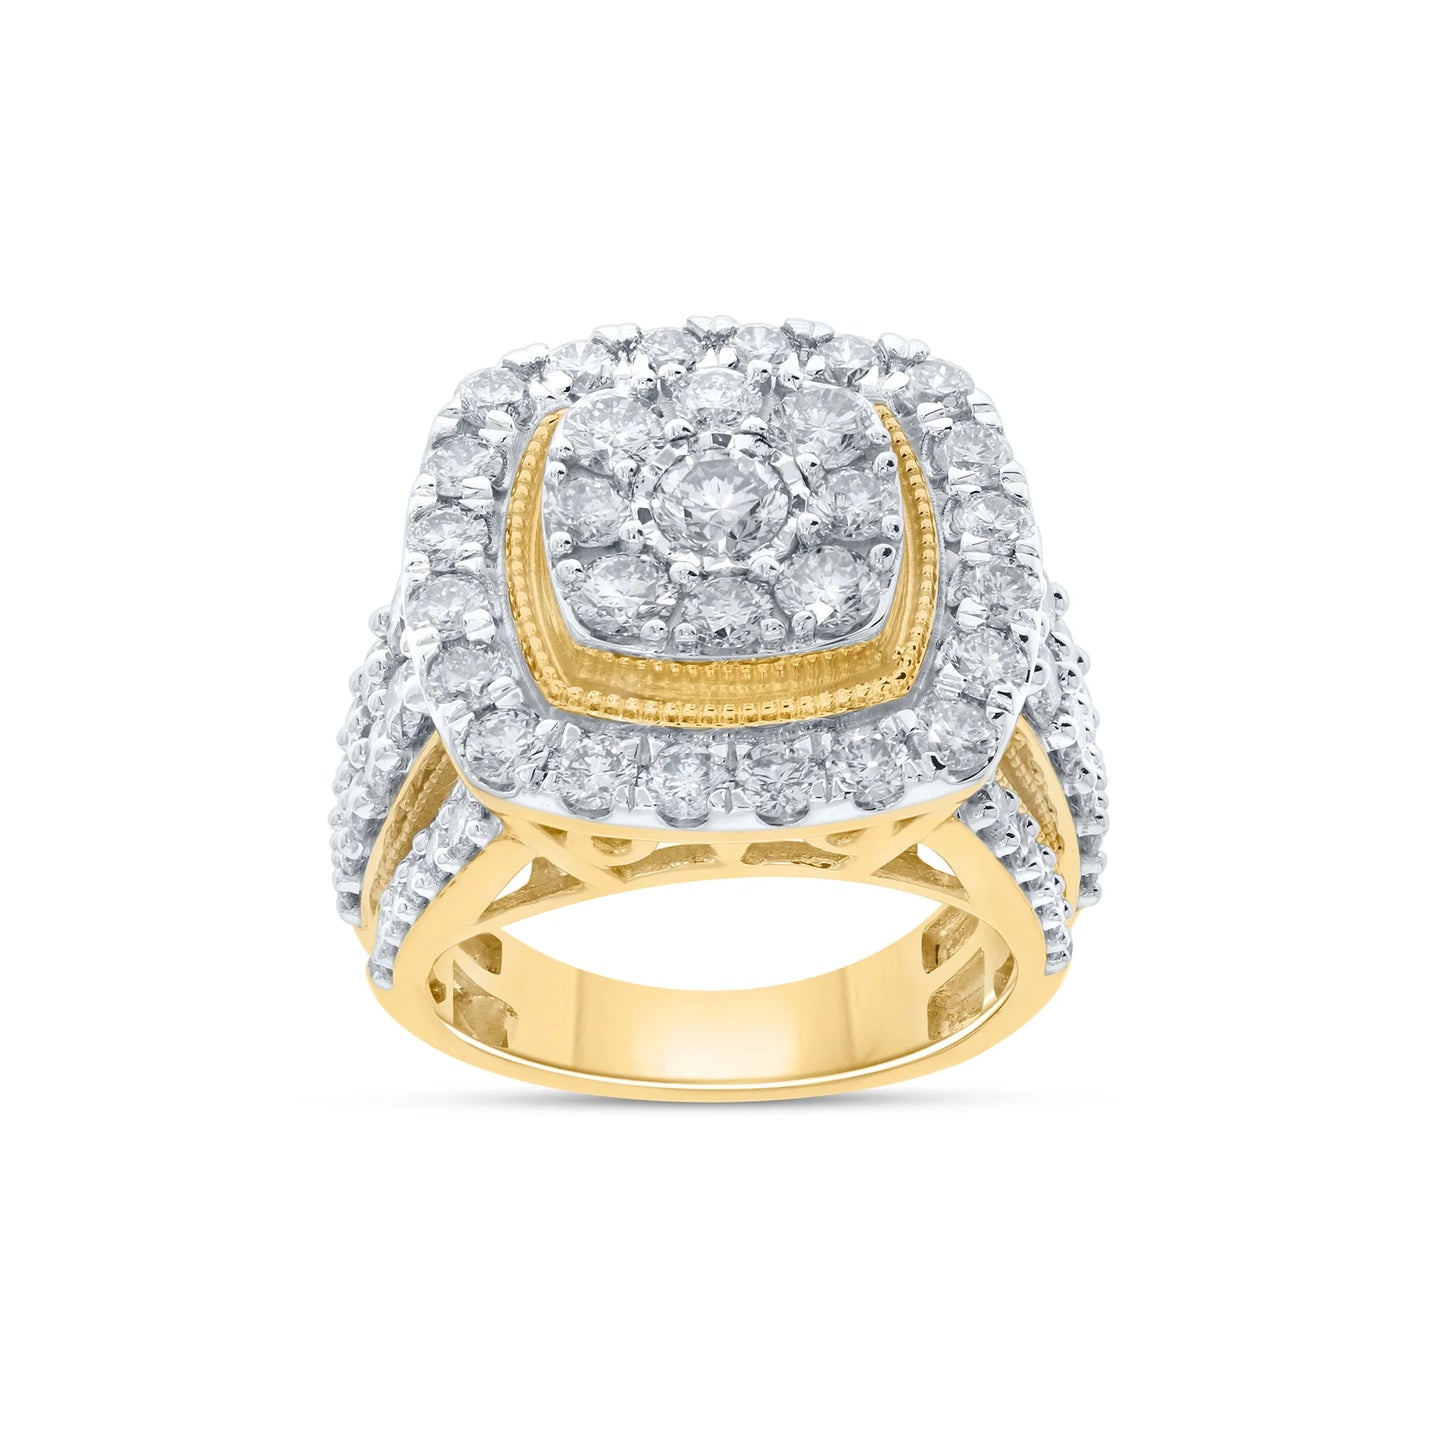 10K YELLOW GOLD 4.25 CARAT WOMEN REAL DIAMOND ENGAGEMENT RING WEDDING RING BRIDAL